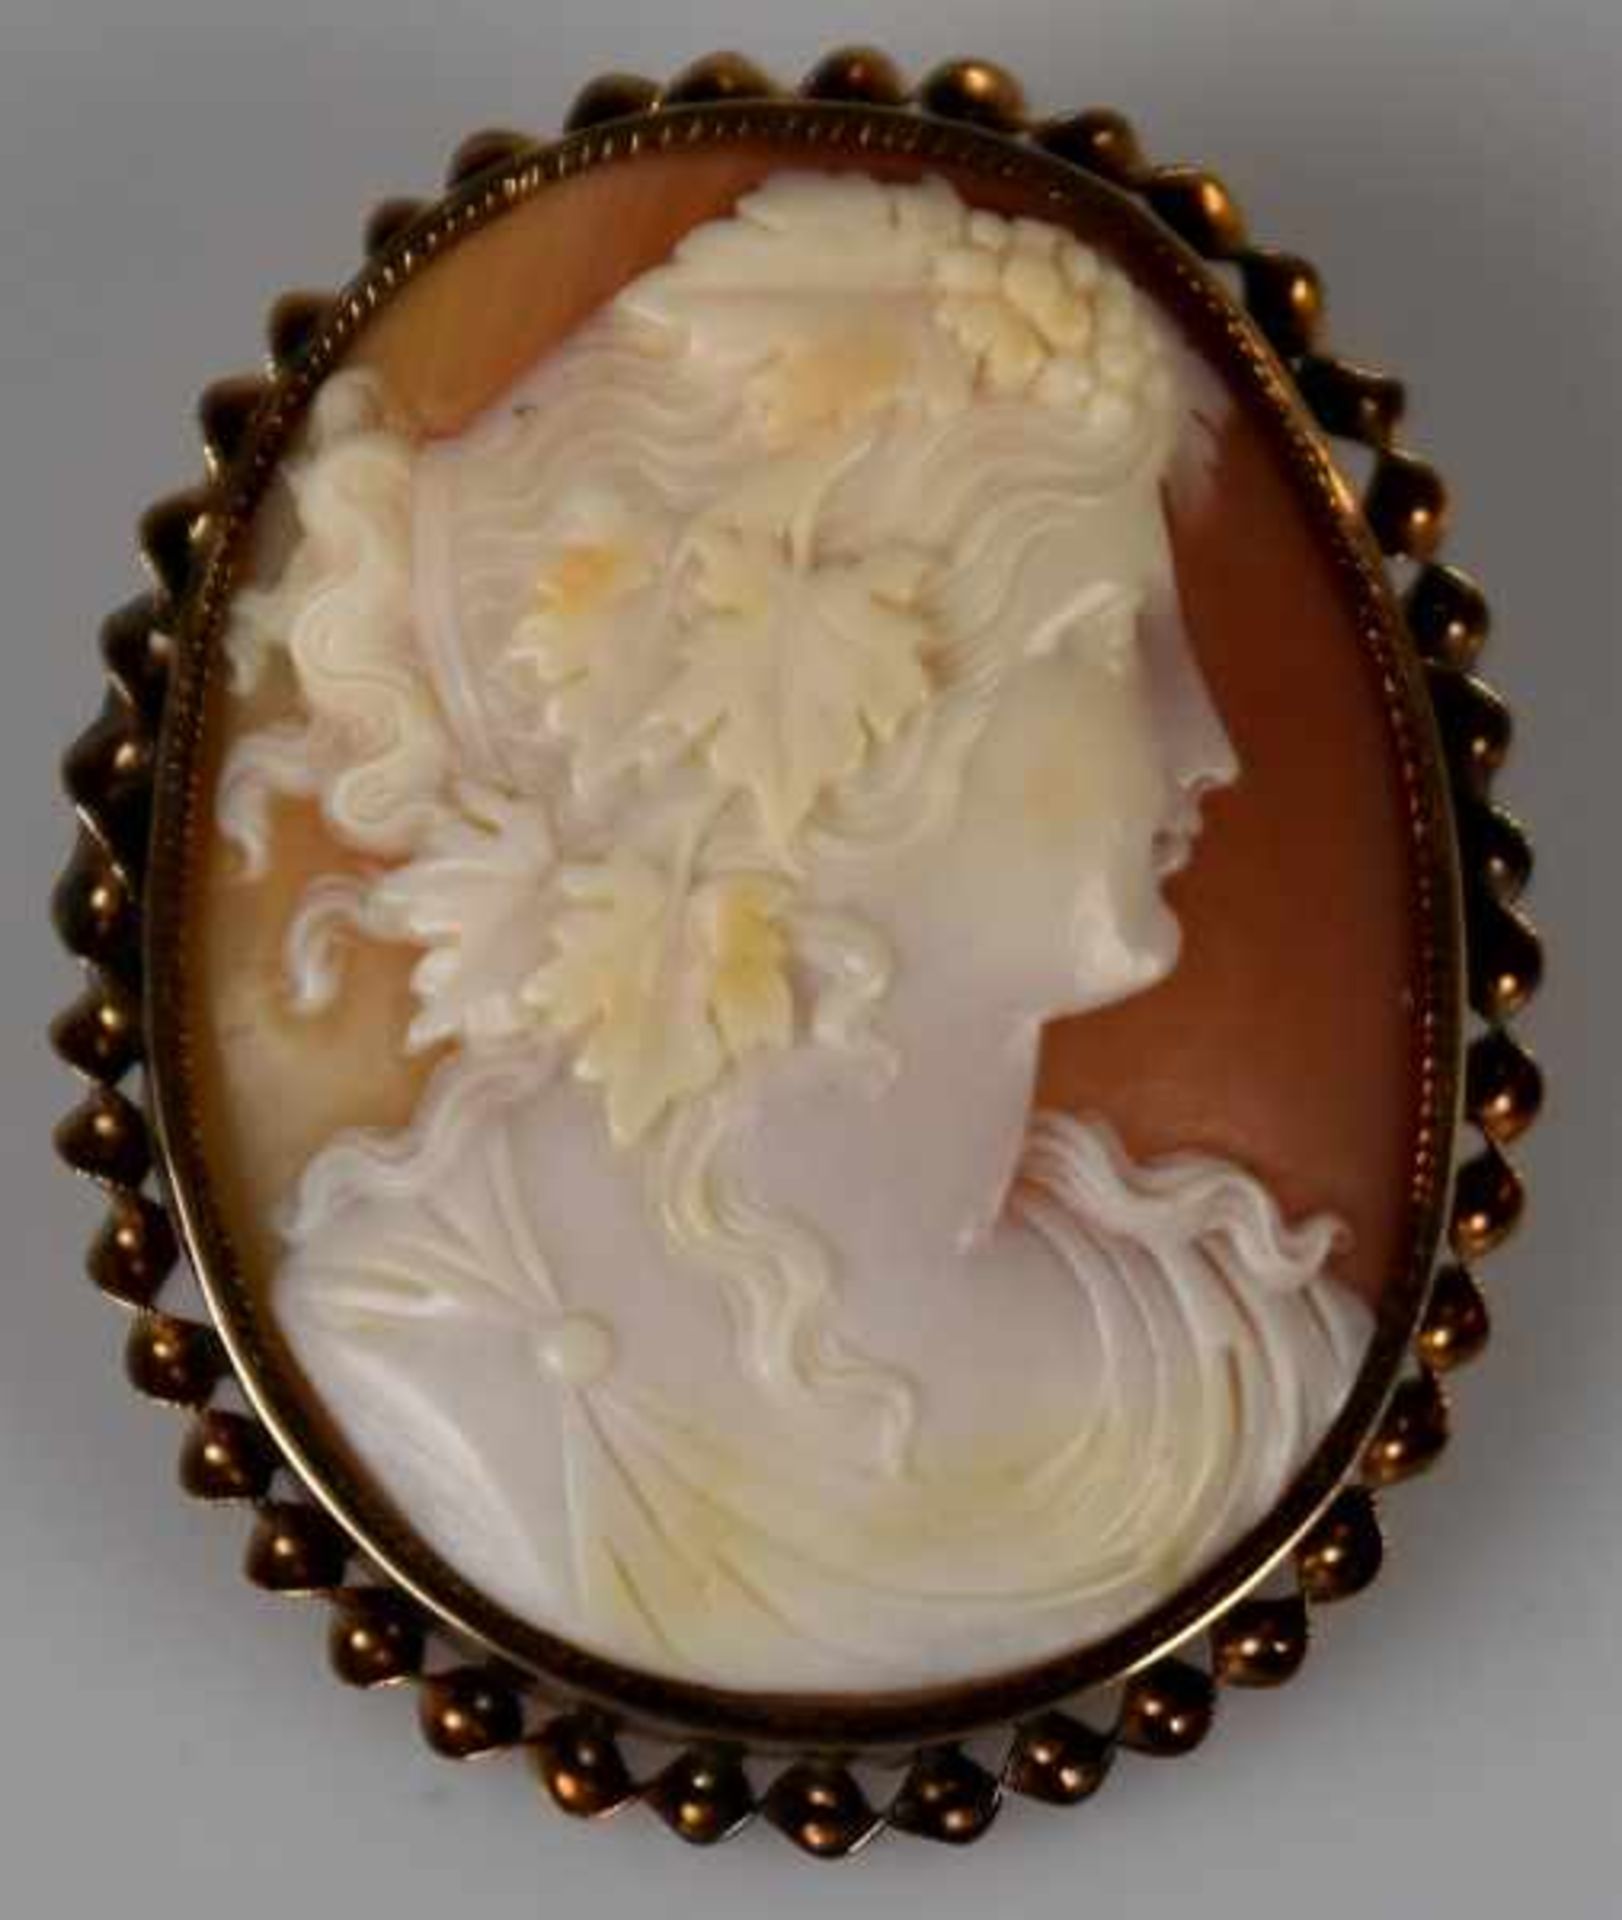 KAMEE-BROSCHE ovales Frauenportrait mit Weintrauben und Weinblättern im Haar, geschnitten in